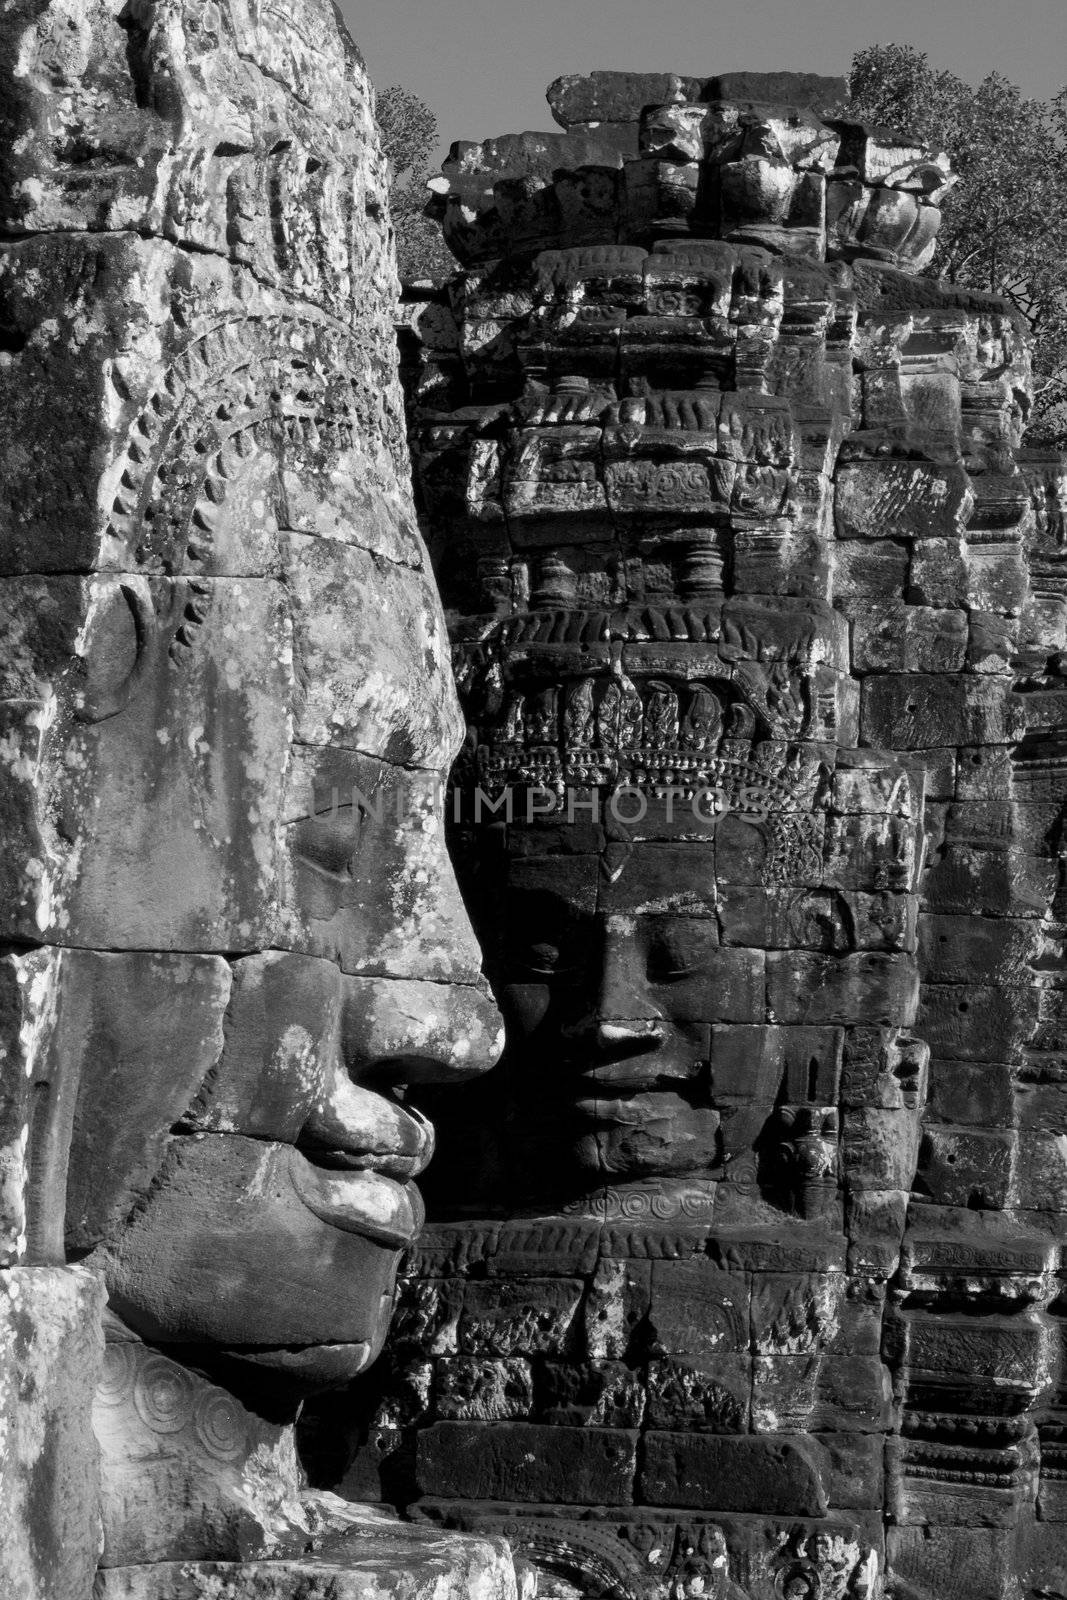 Shot at a temple in Angkor, Cambodia 